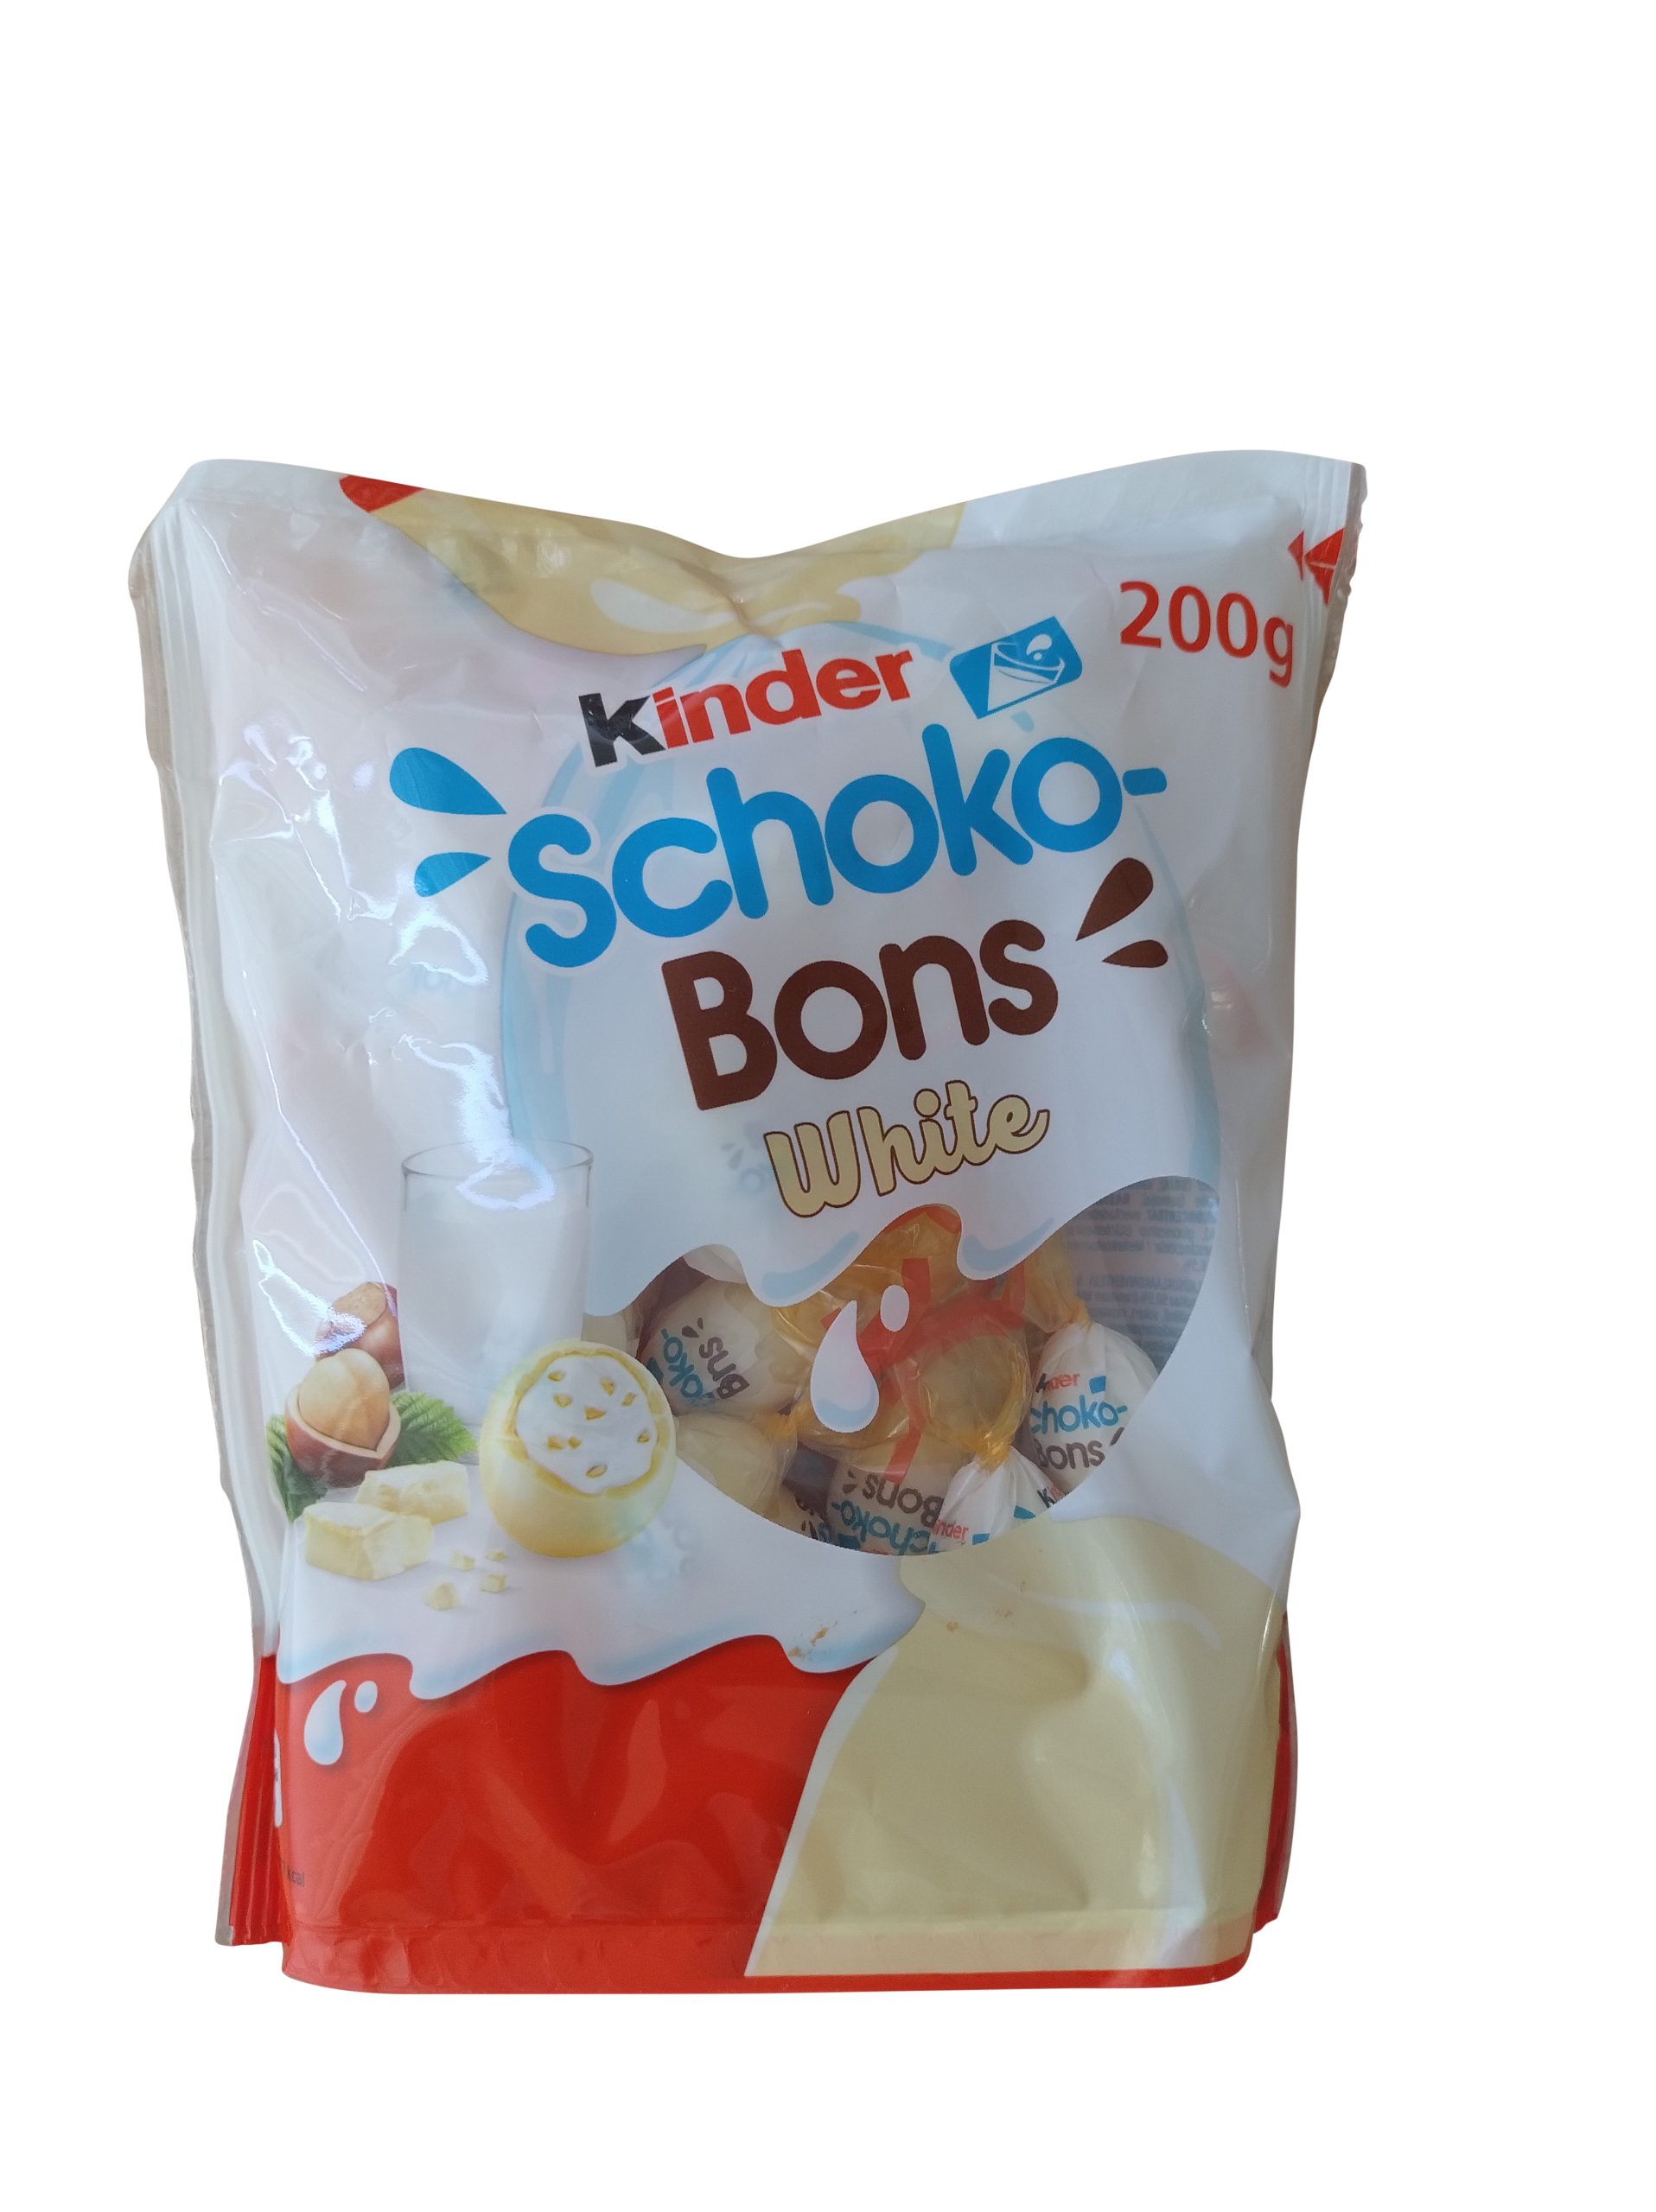 Kinder schoko-bons (unité)